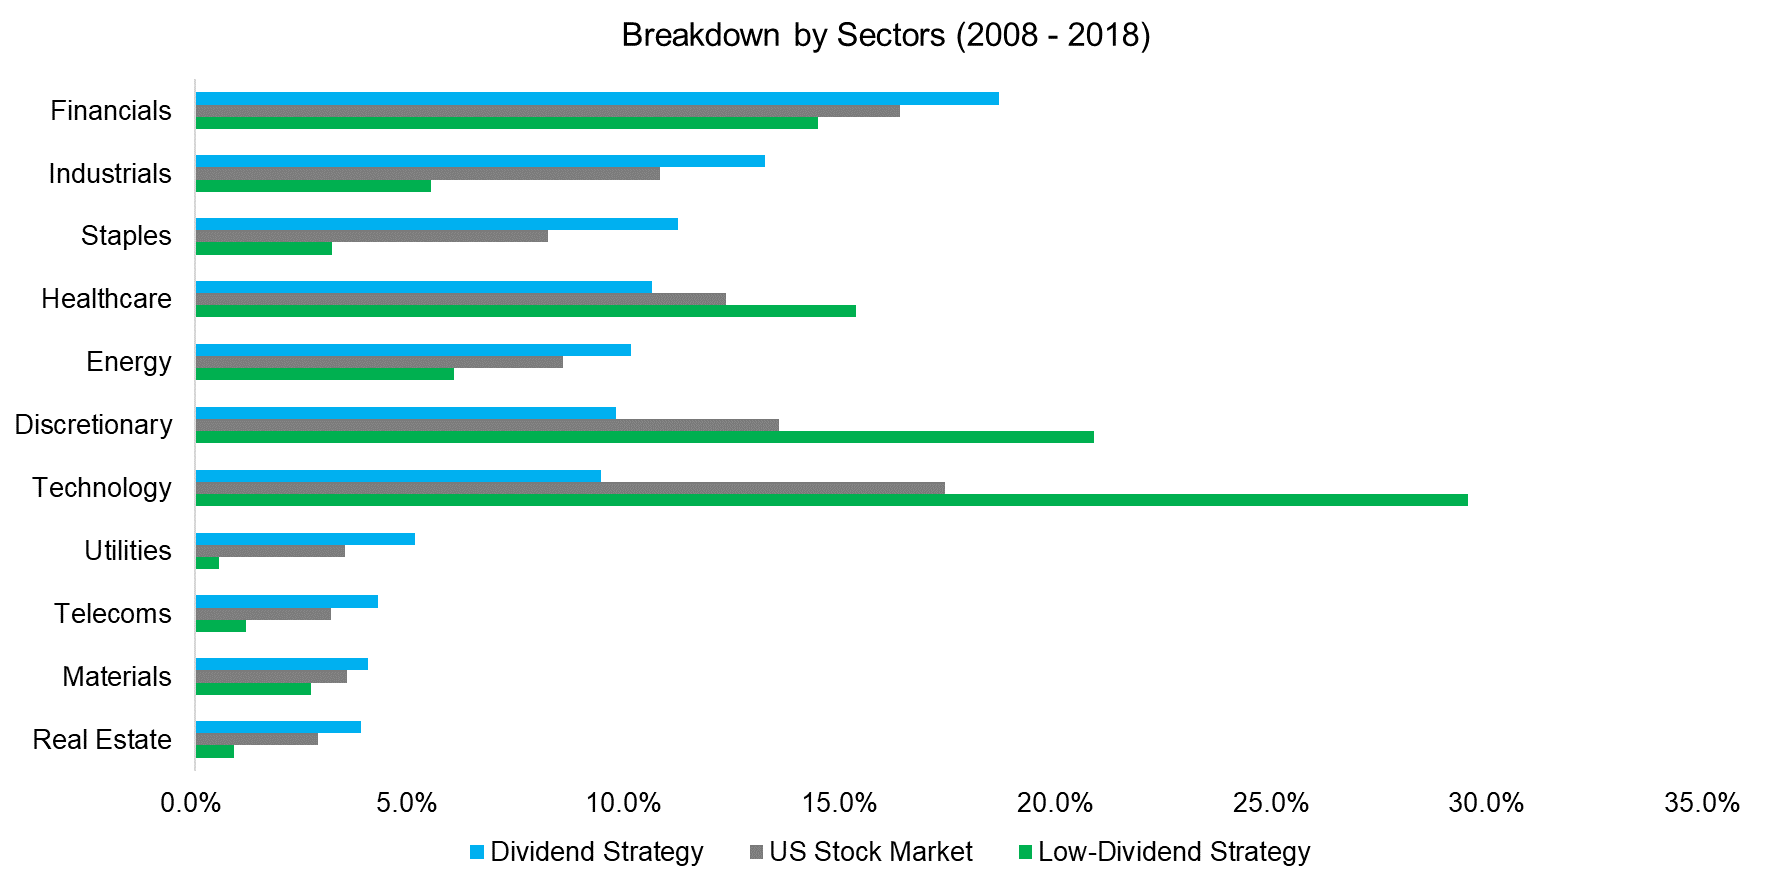 Breakdown by Sectors (2008 - 2018)